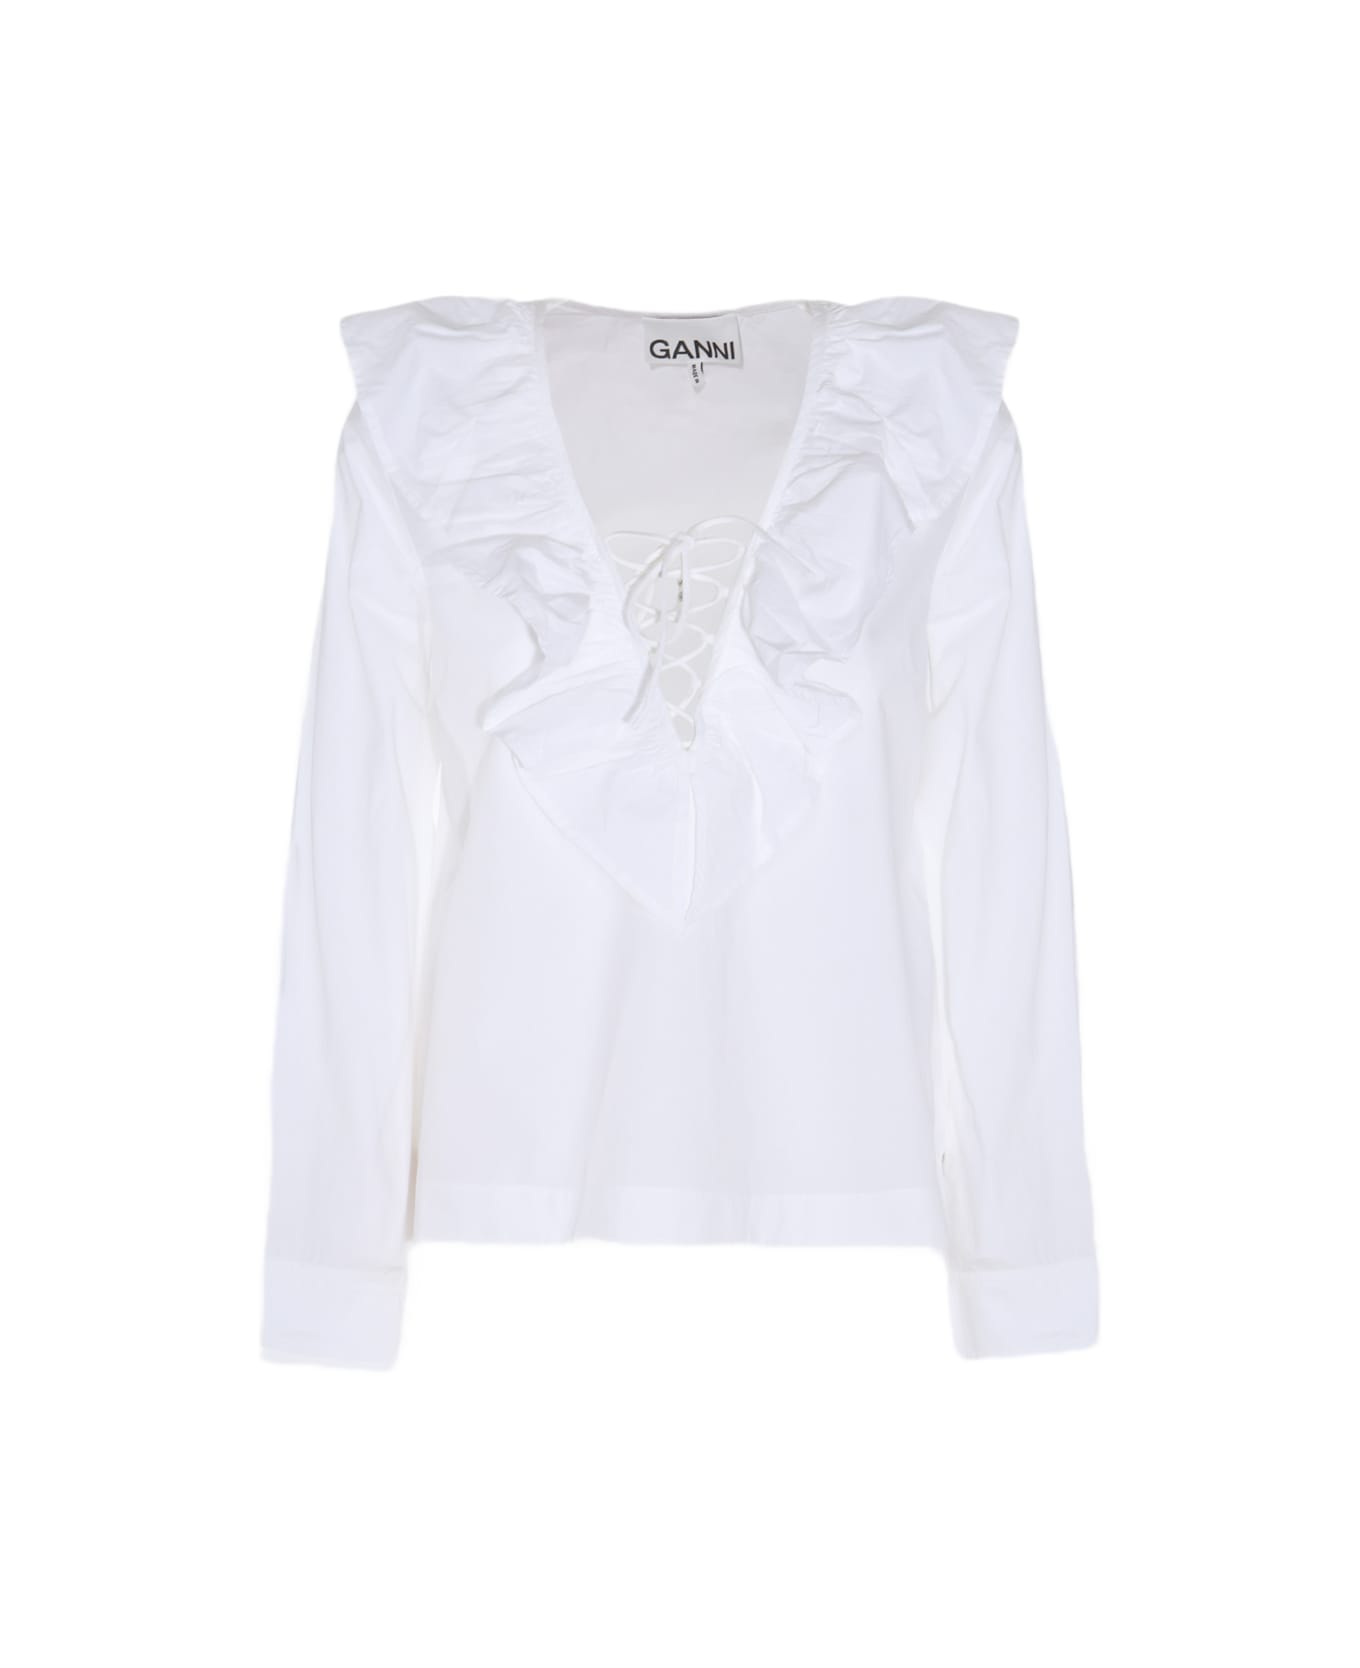 Ganni White Cotton Shirt - White ブラウス